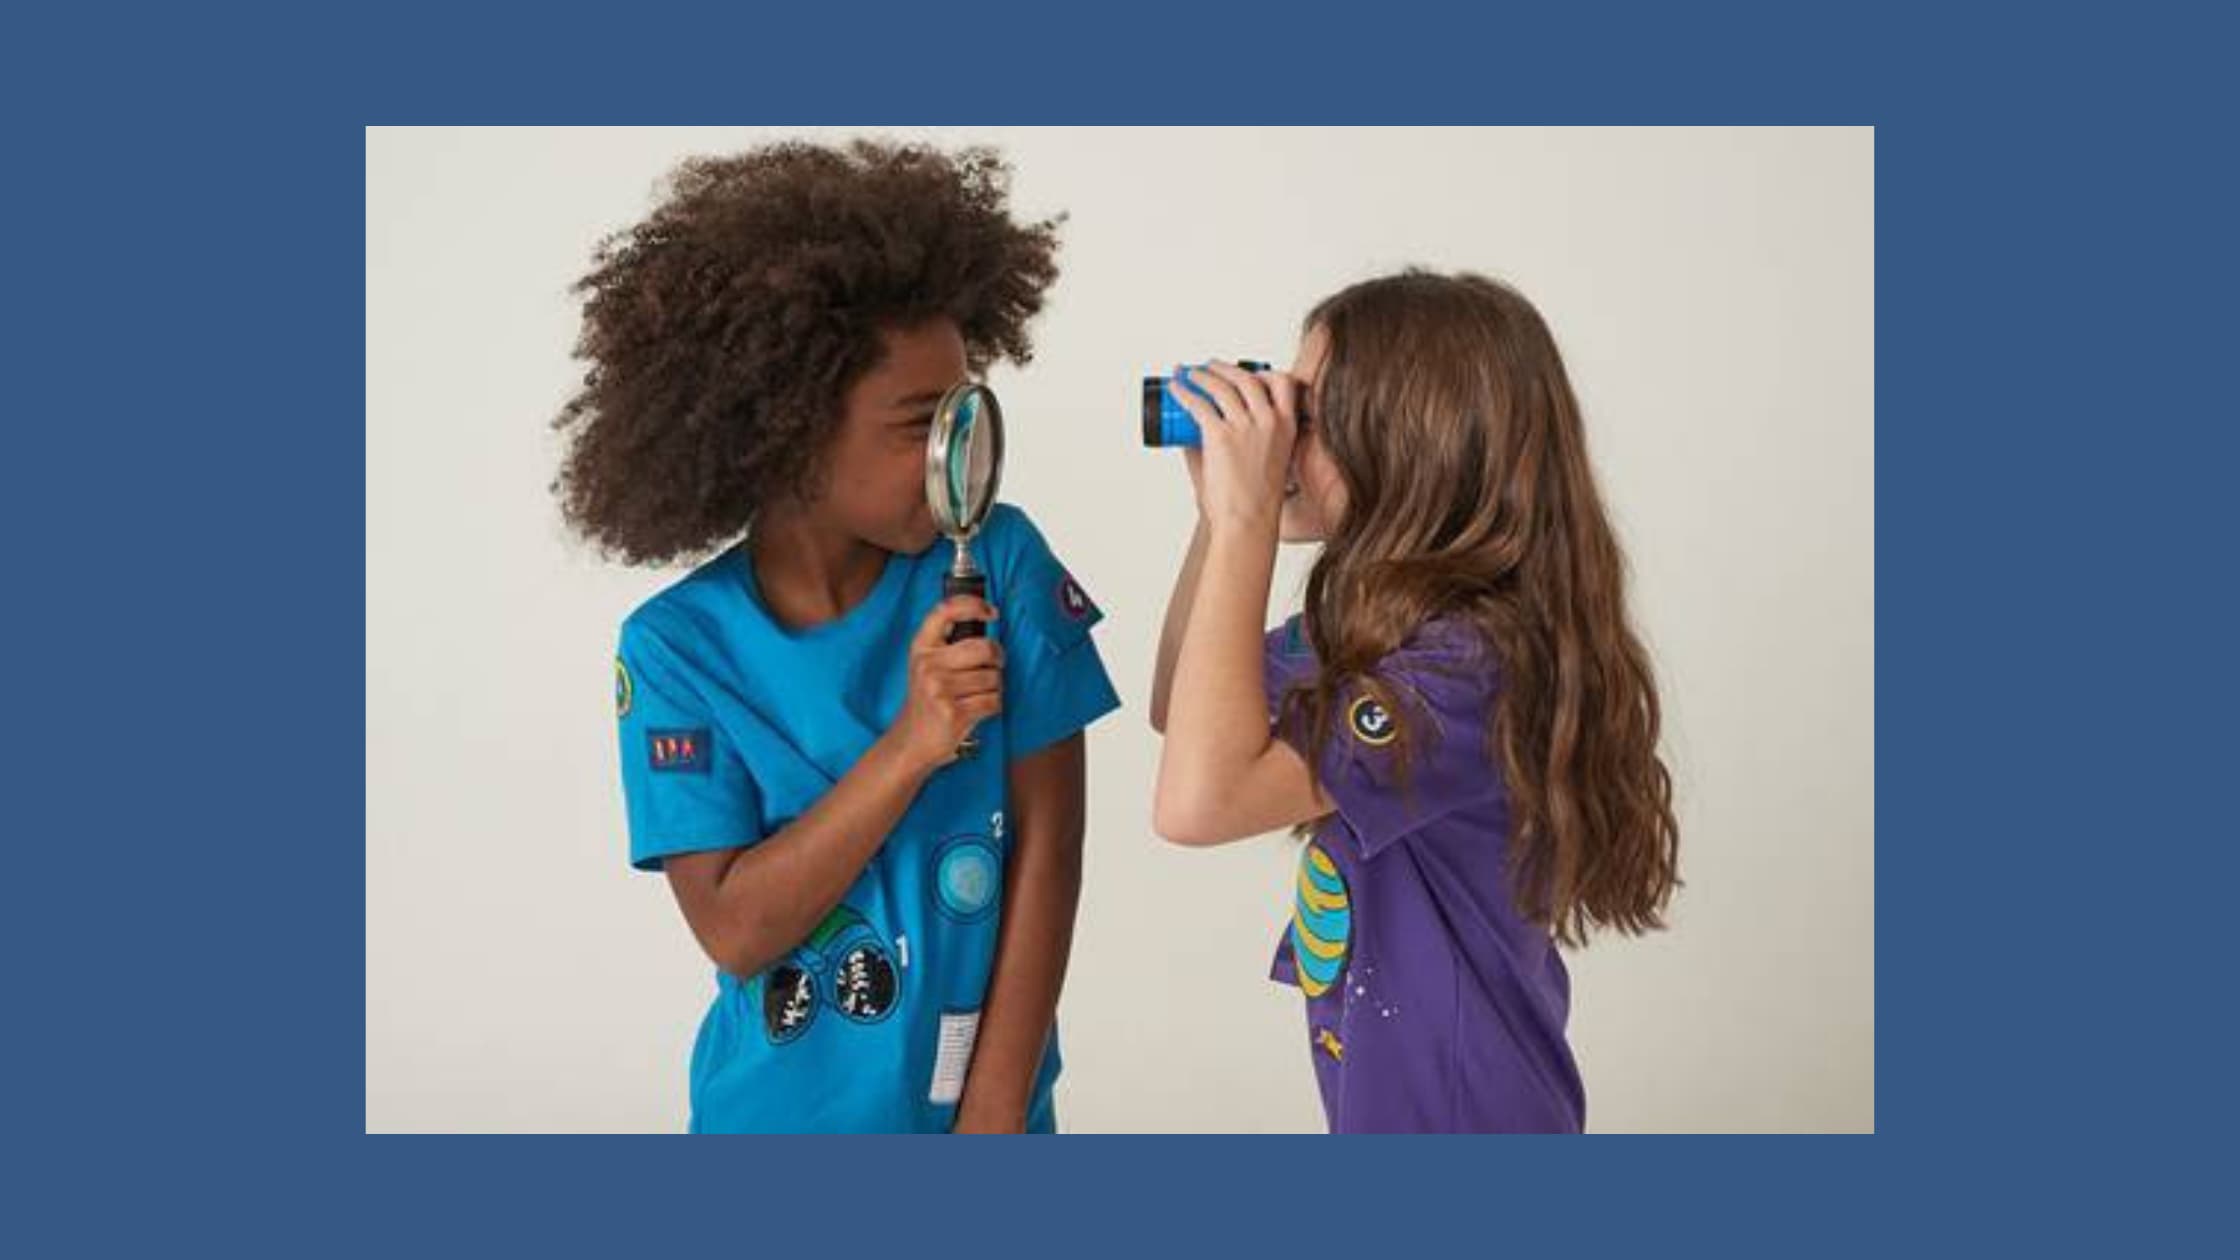 Hering Kids lança coleção da série Detetives do Prédio Azul do Gloob